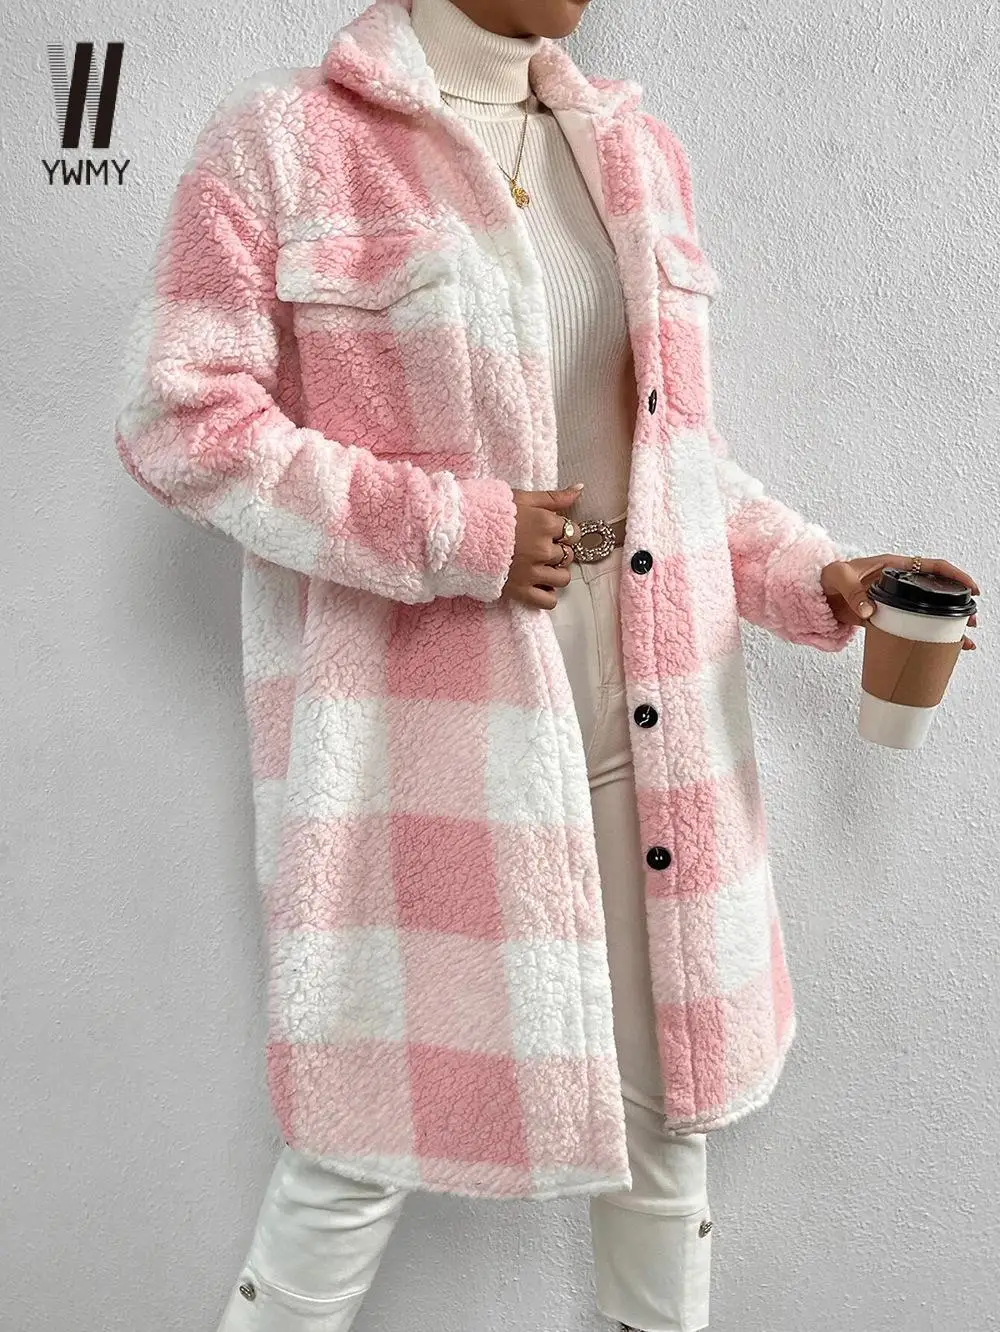 

WYWMY Autumn Winter Women's Long Plaid Woolen Coat Female Teddy Jacket Elegant Streetwear Lattice Coat Tops Women's Clothing